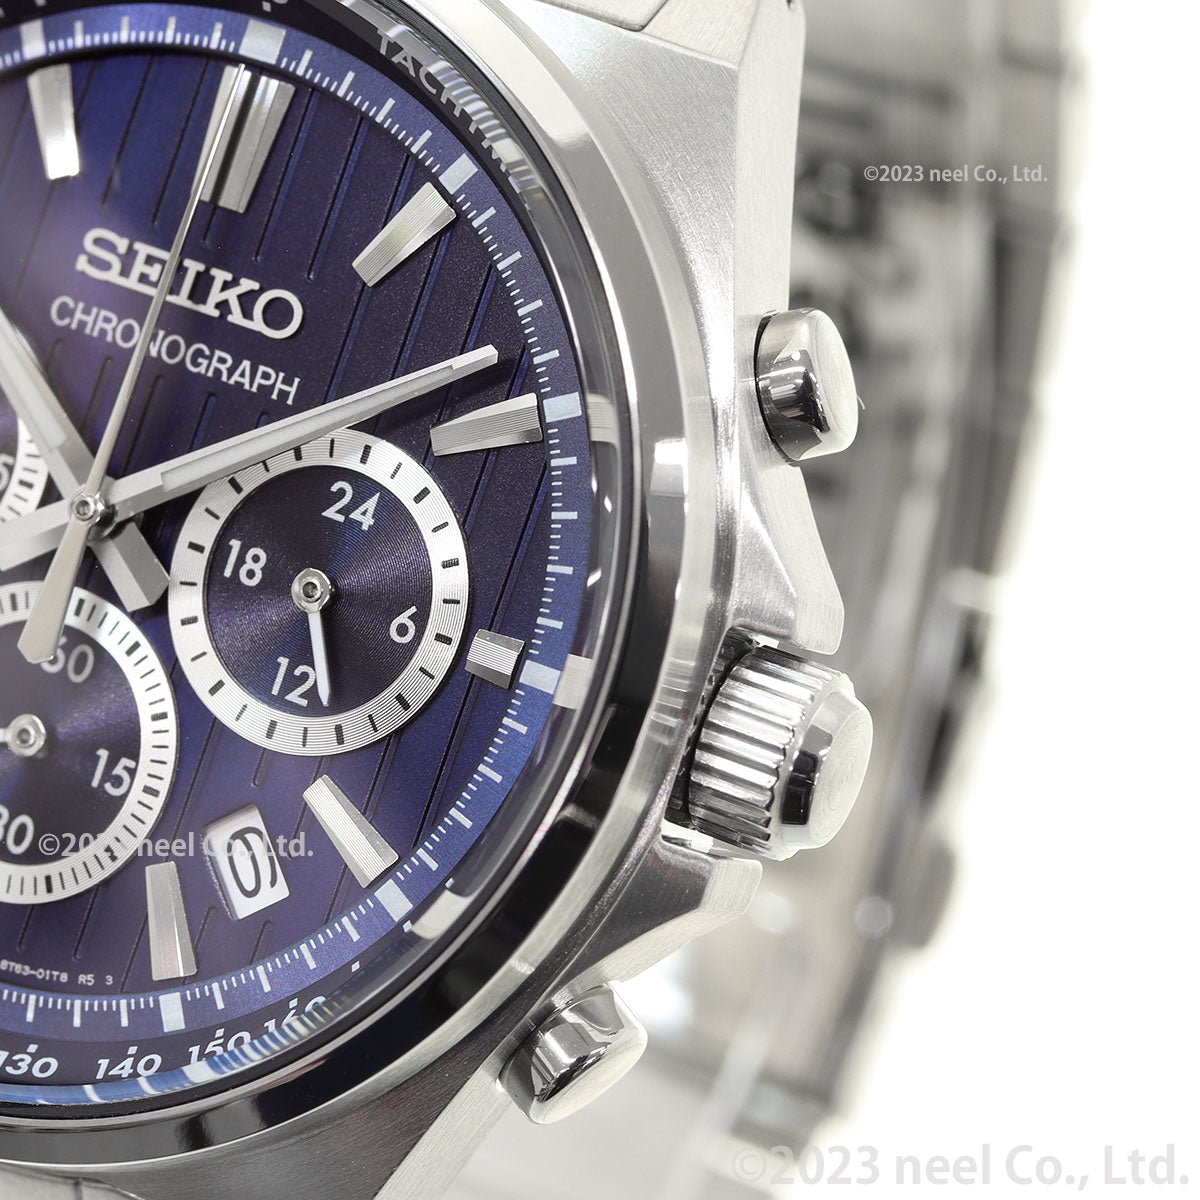 セイコー セレクション SEIKO SELECTION Sシリーズ ショップ専用 流通限定モデル 腕時計 メンズ クロノグラフ SBTR033